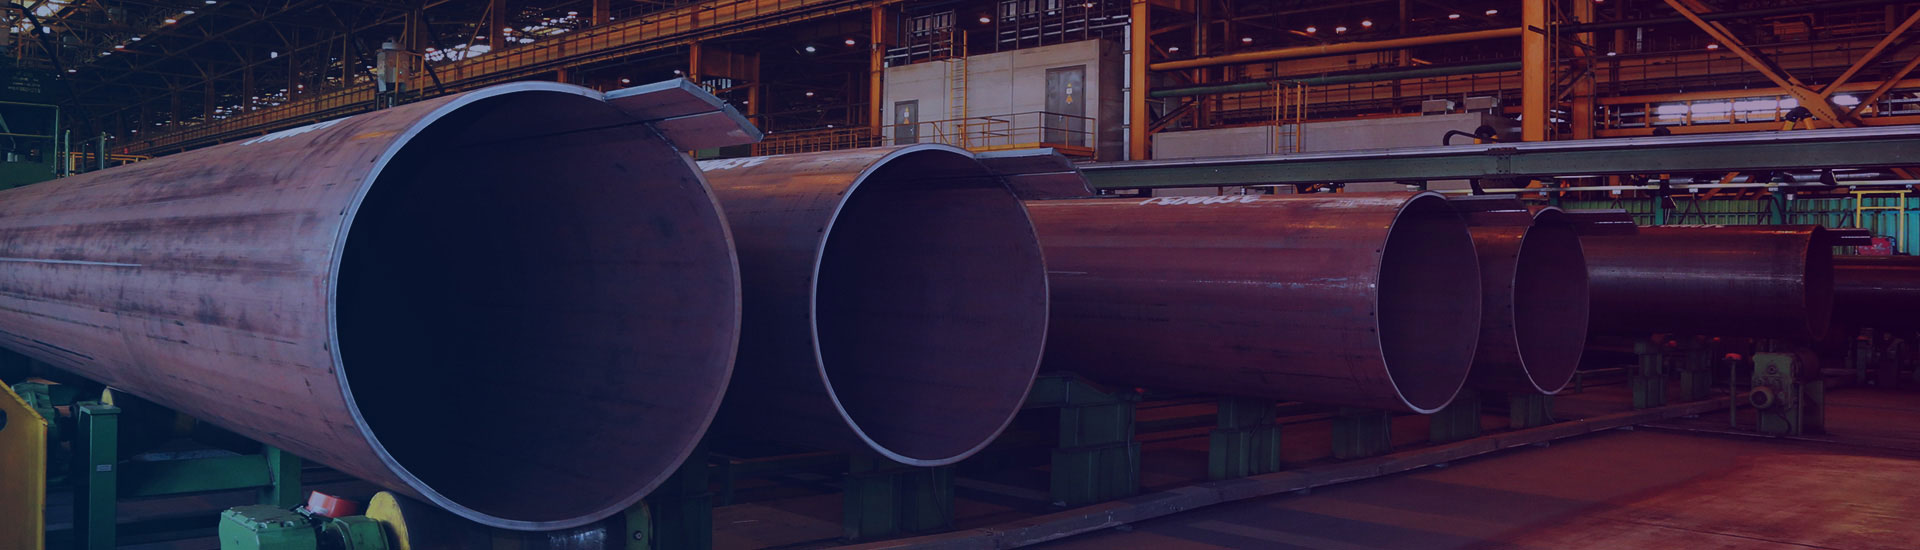 productor chino de tubos de acero sin costura, tubos de acero al carbono, tubos de acero inoxidable, tubos de acero aleado, tubos OCTG